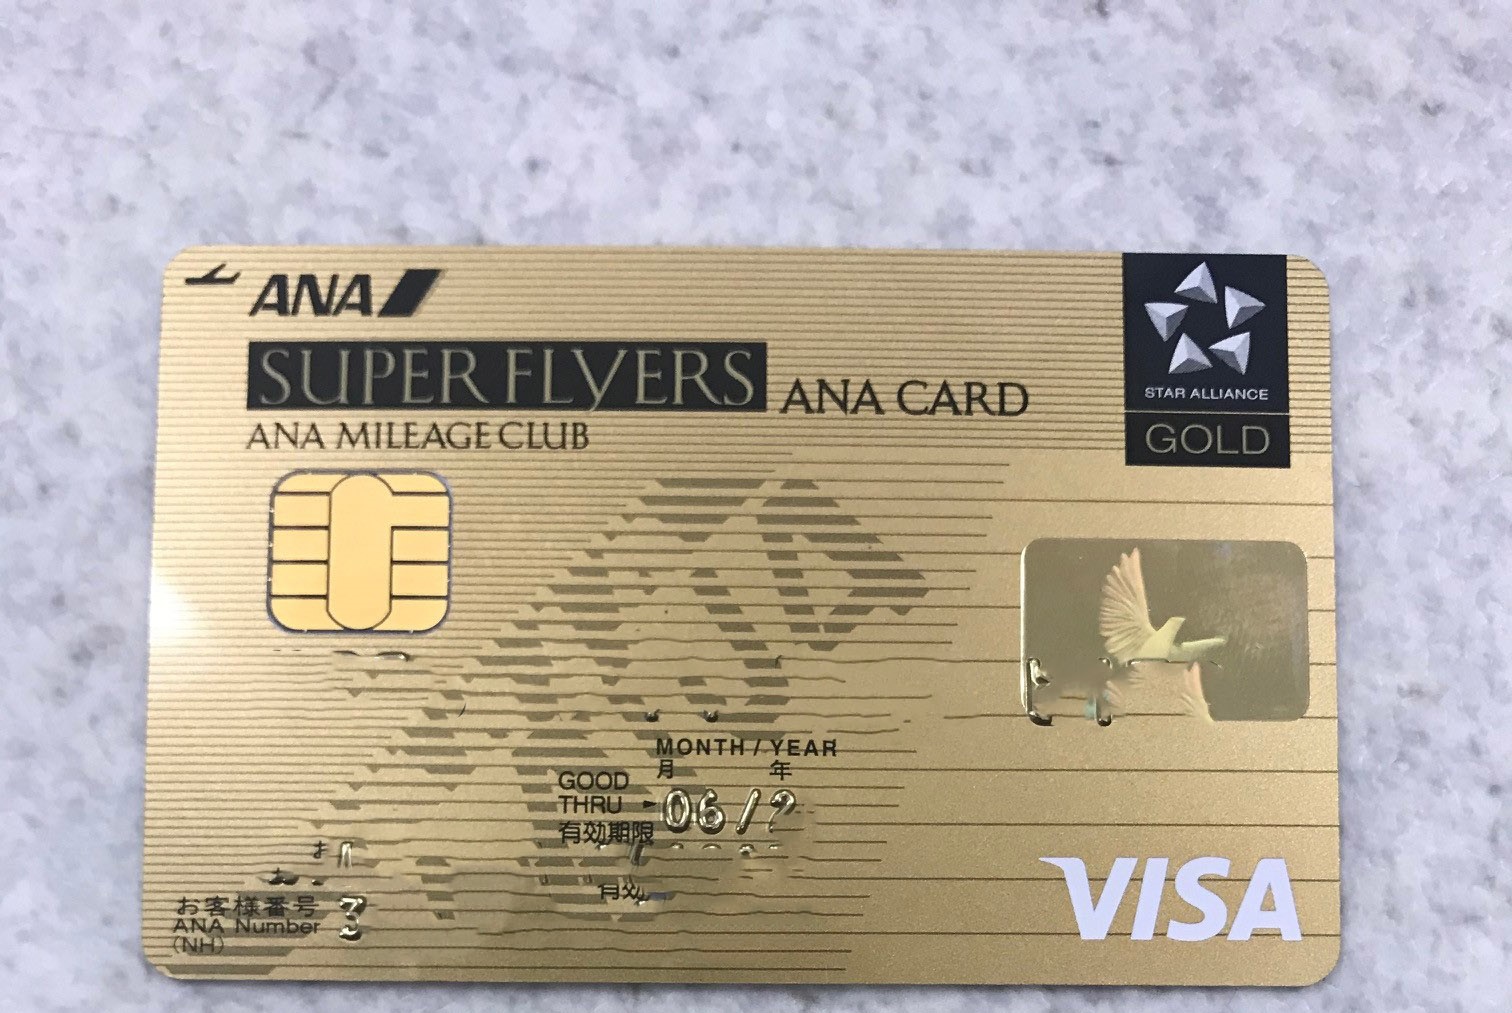 ANAVISASFCスーパーフライヤーズカードの券面写真